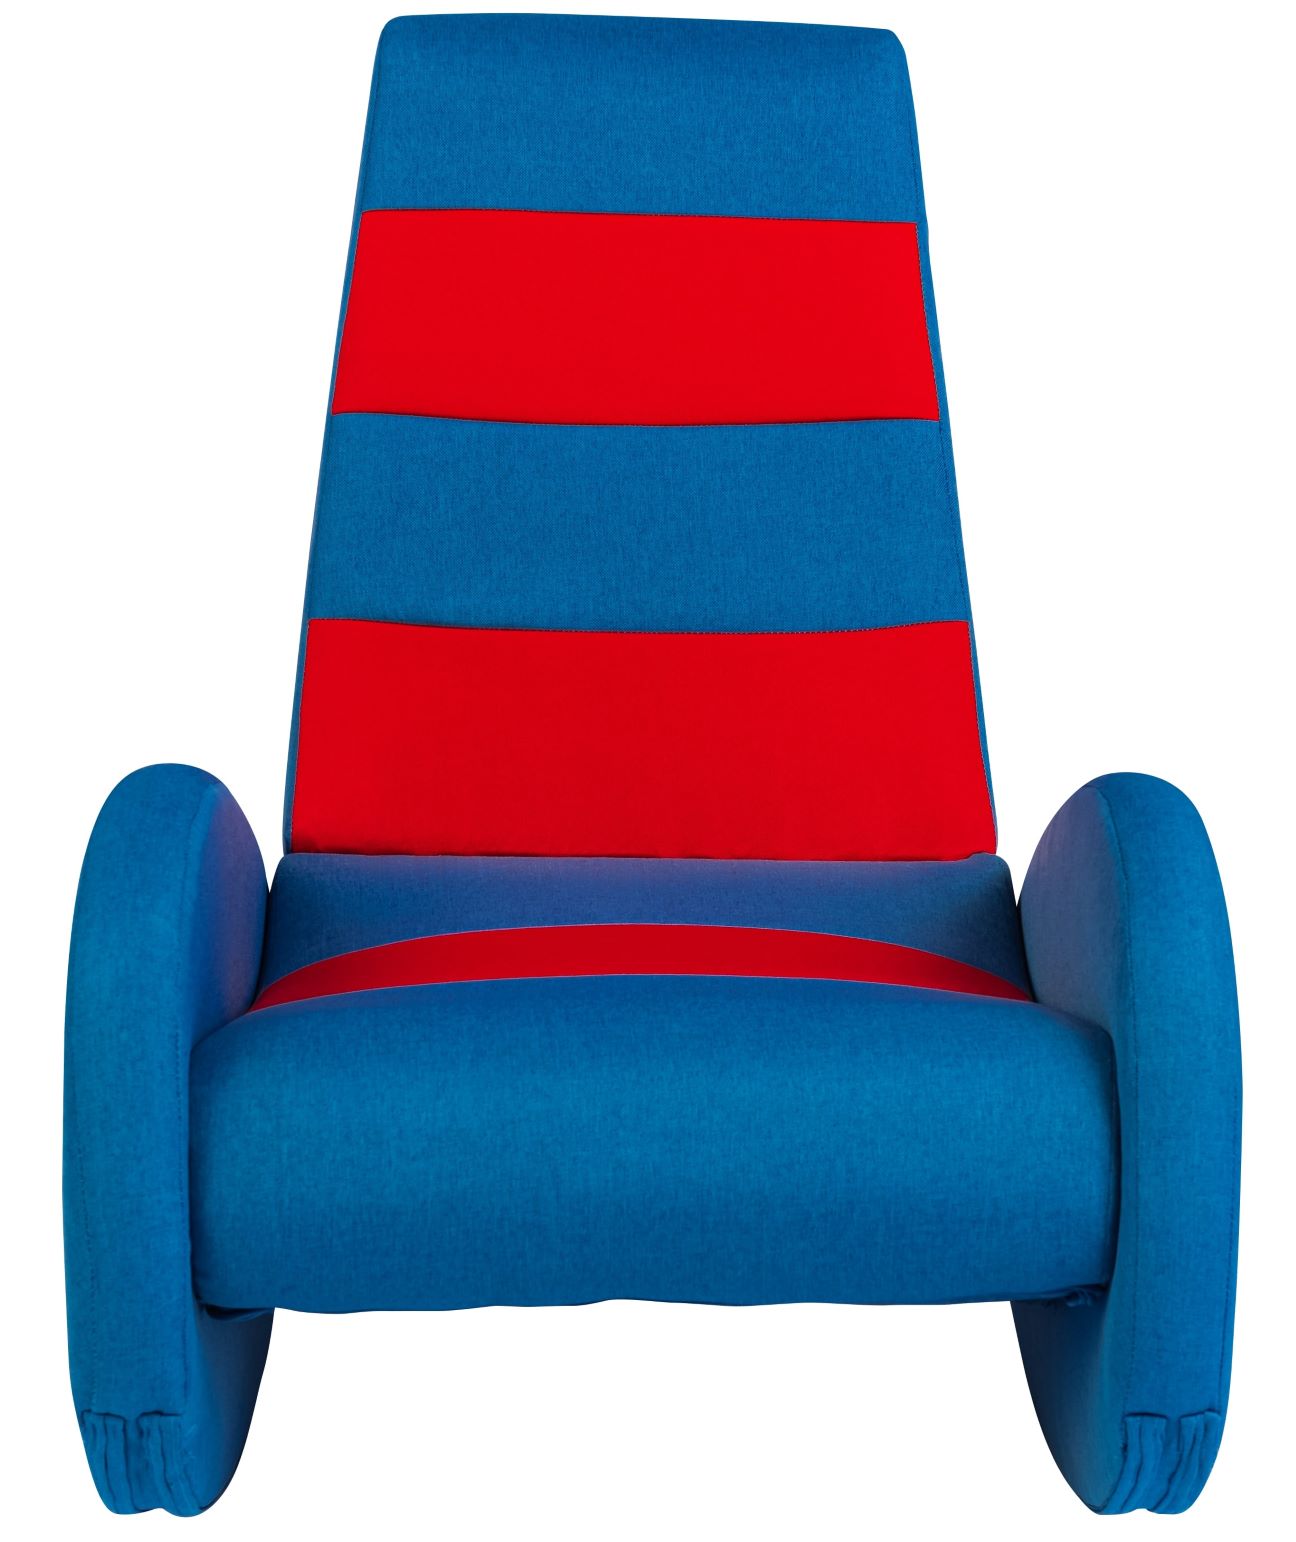 כורסא לילדים מתאימה למשחק פלייסטיישן, בצבע אדום וכחול כמו ברצלונה